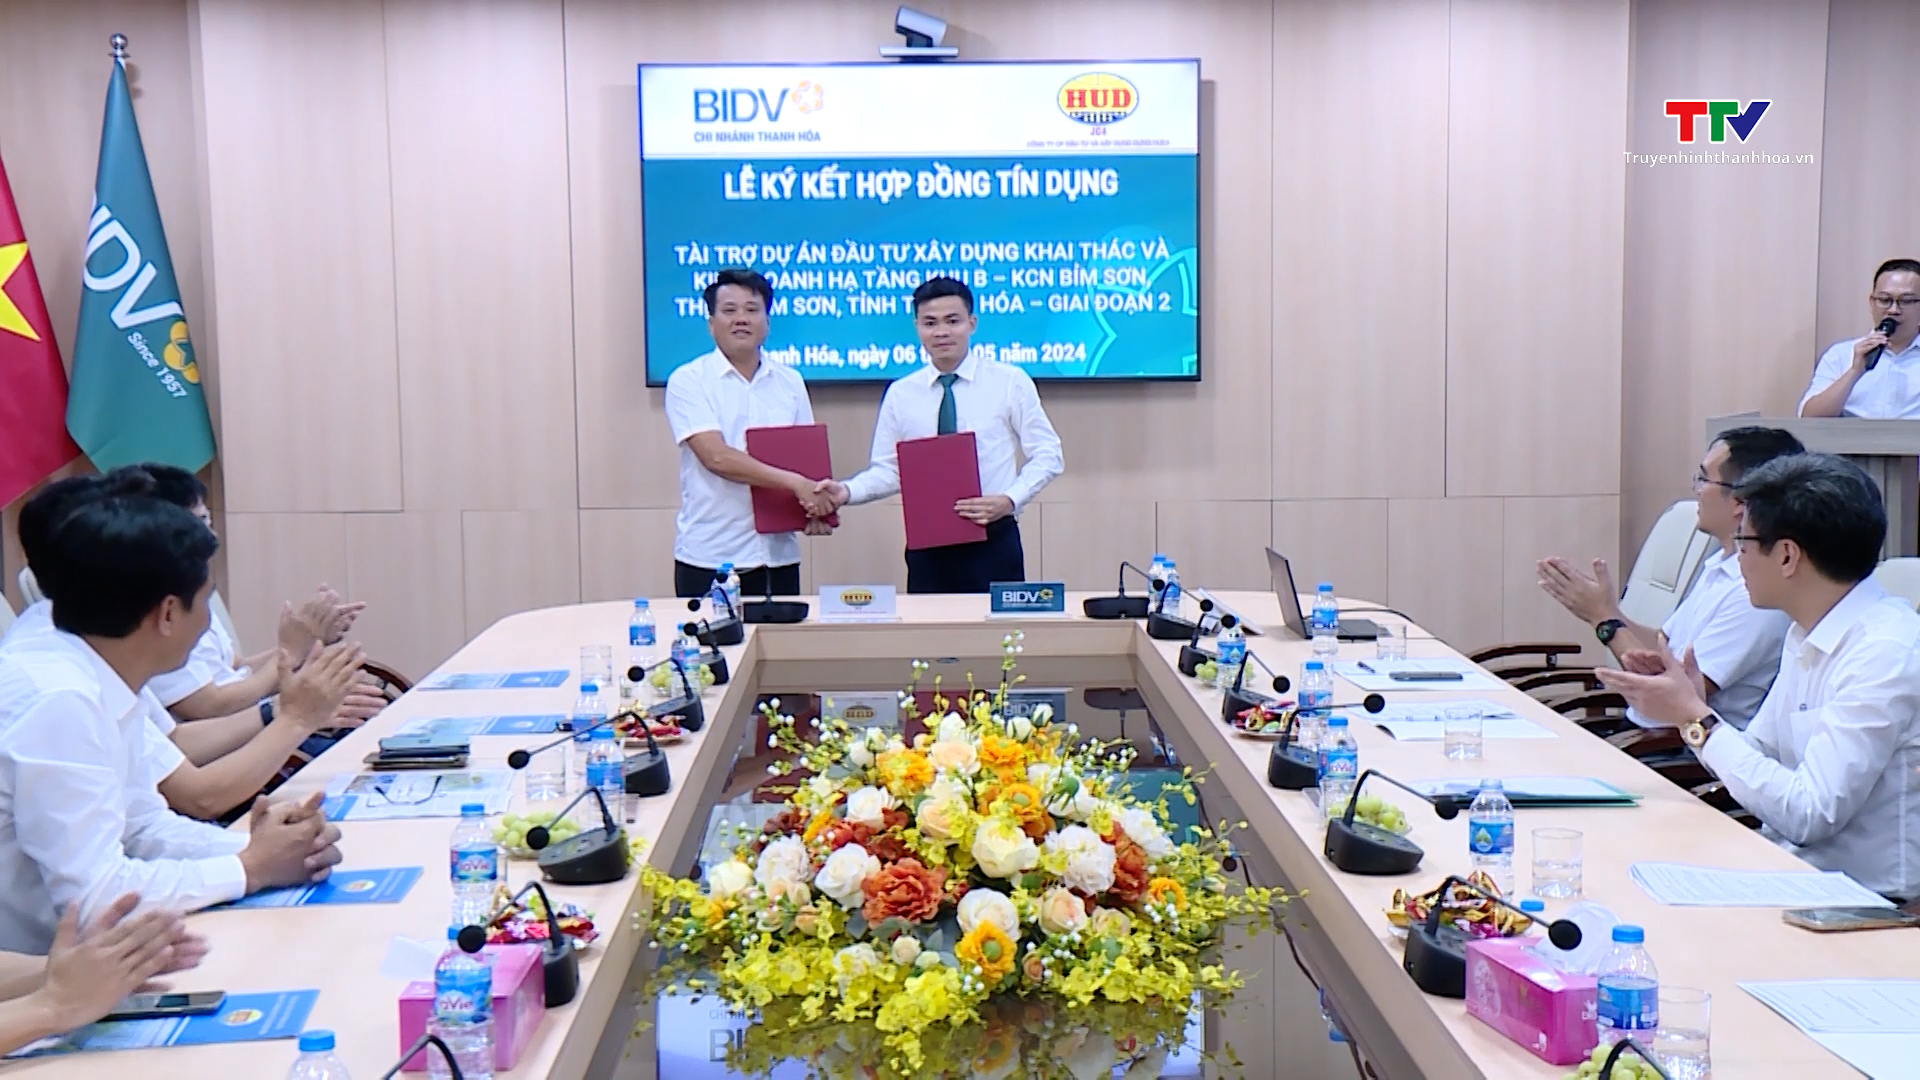 Ký kết hợp đồng tài trợ tín dụng giữa BIDV Thanh Hóa và Công ty HUD4- Ảnh 2.